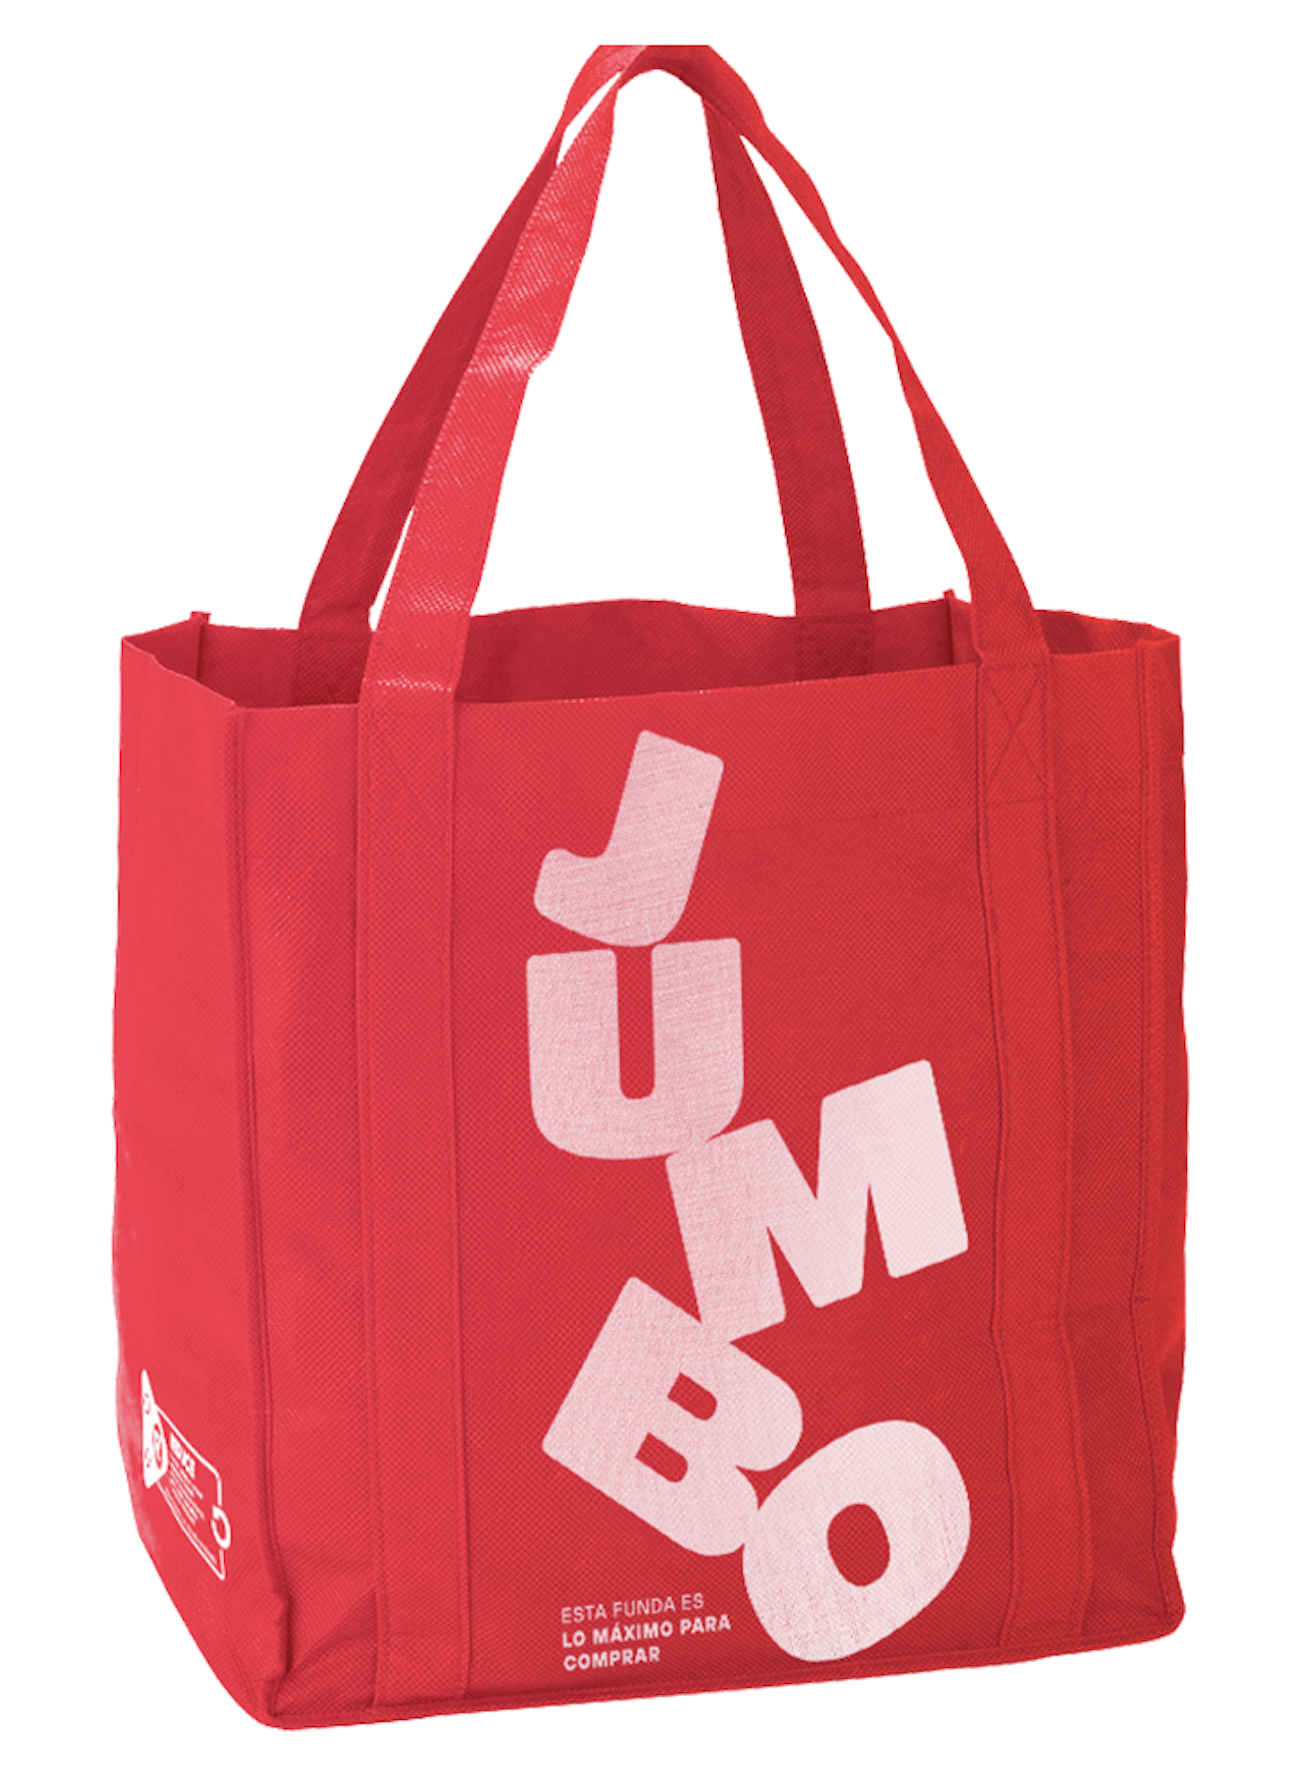 Jumbo lanza bolsas reusables y adopta medidas para el cuidado del medioambiente